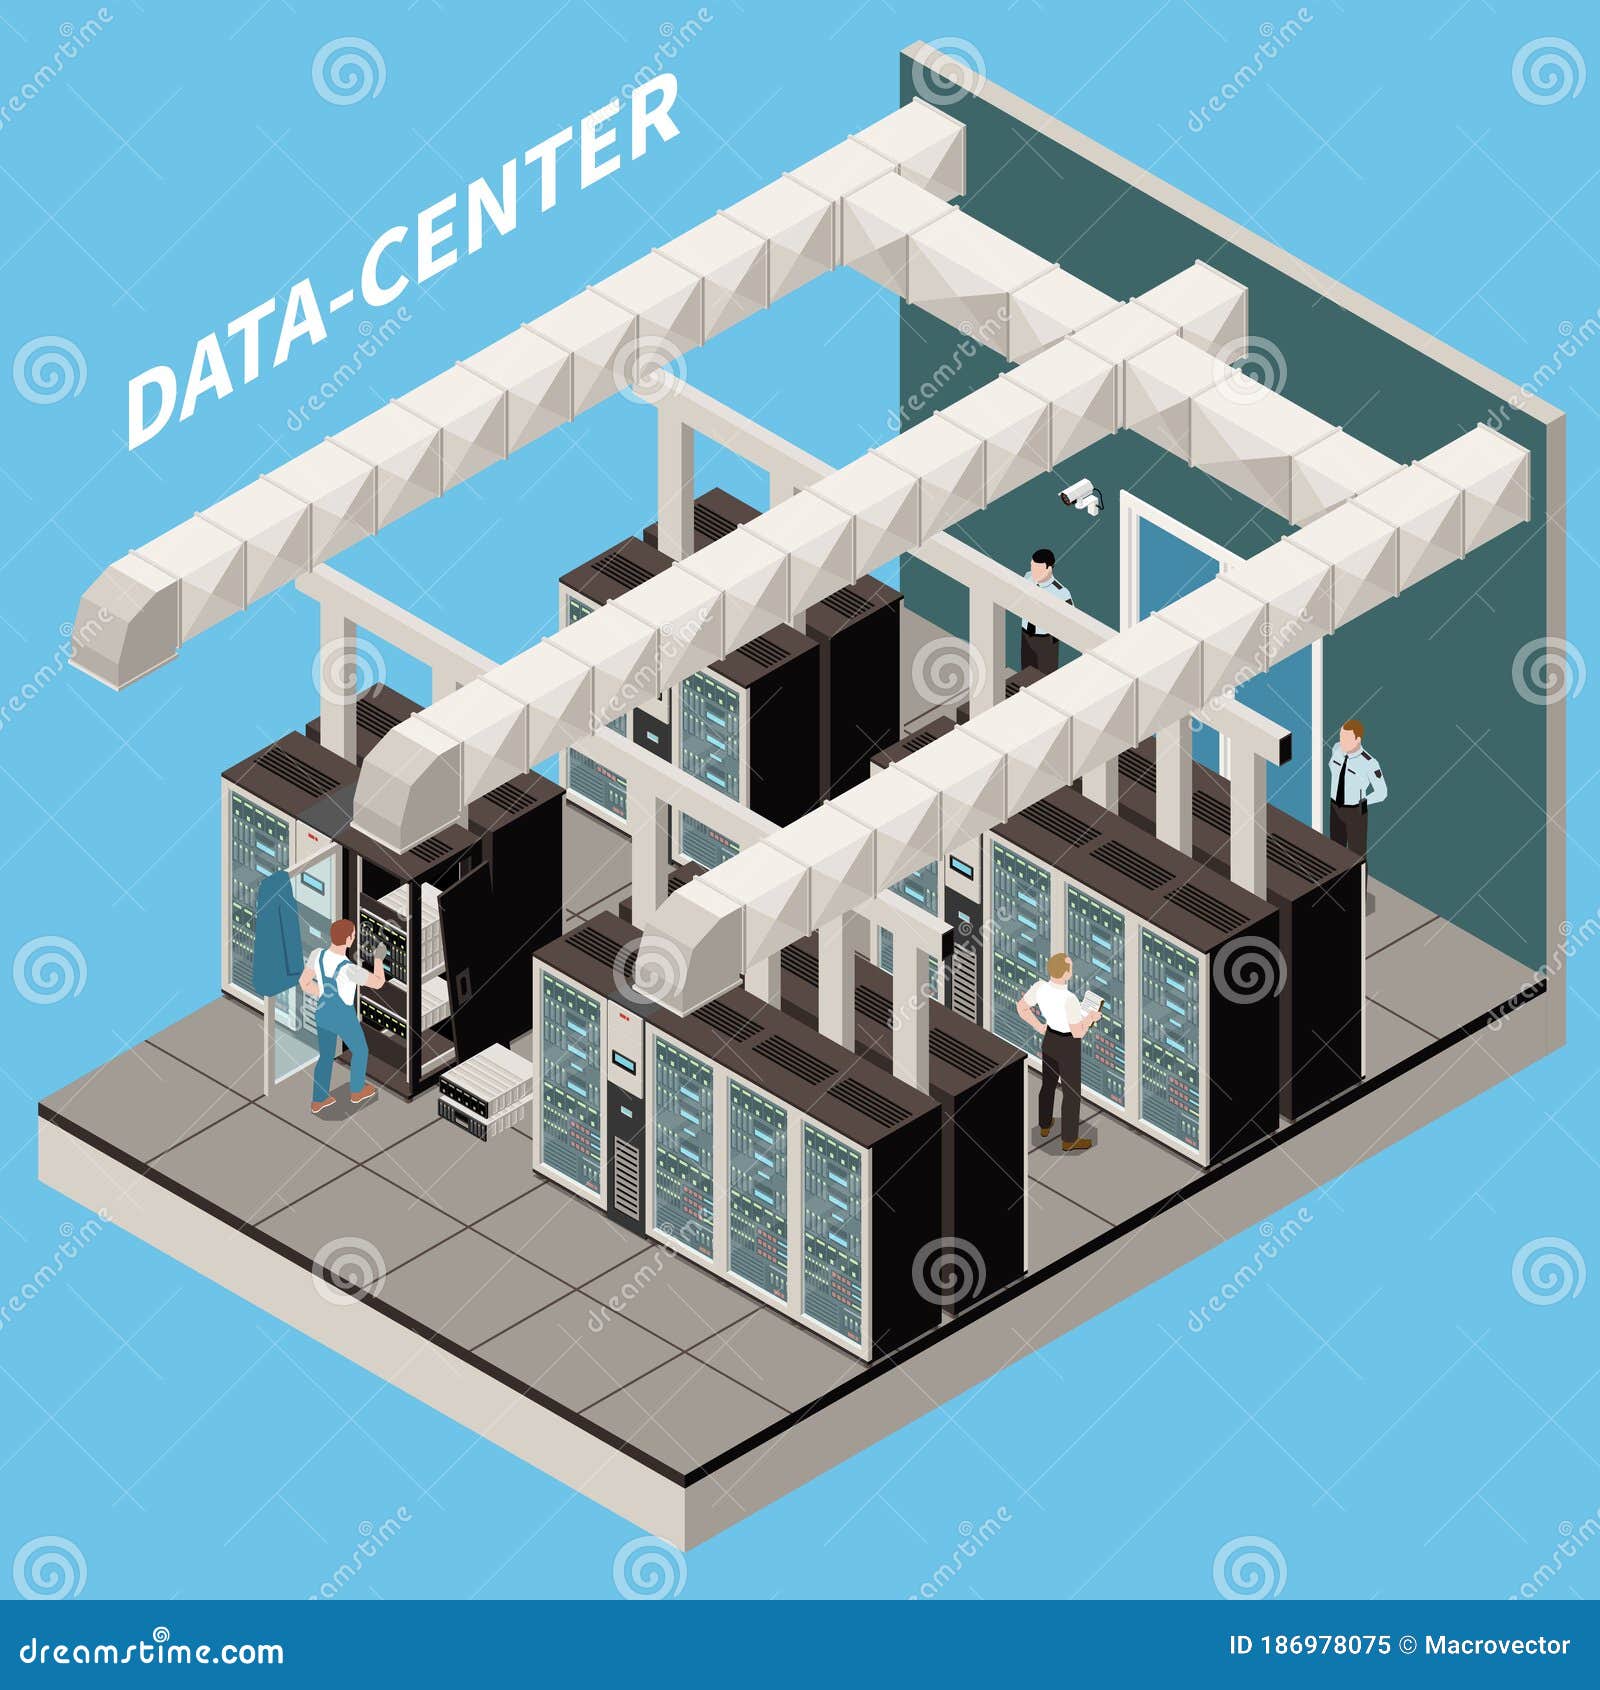 datacenter isometric icon set